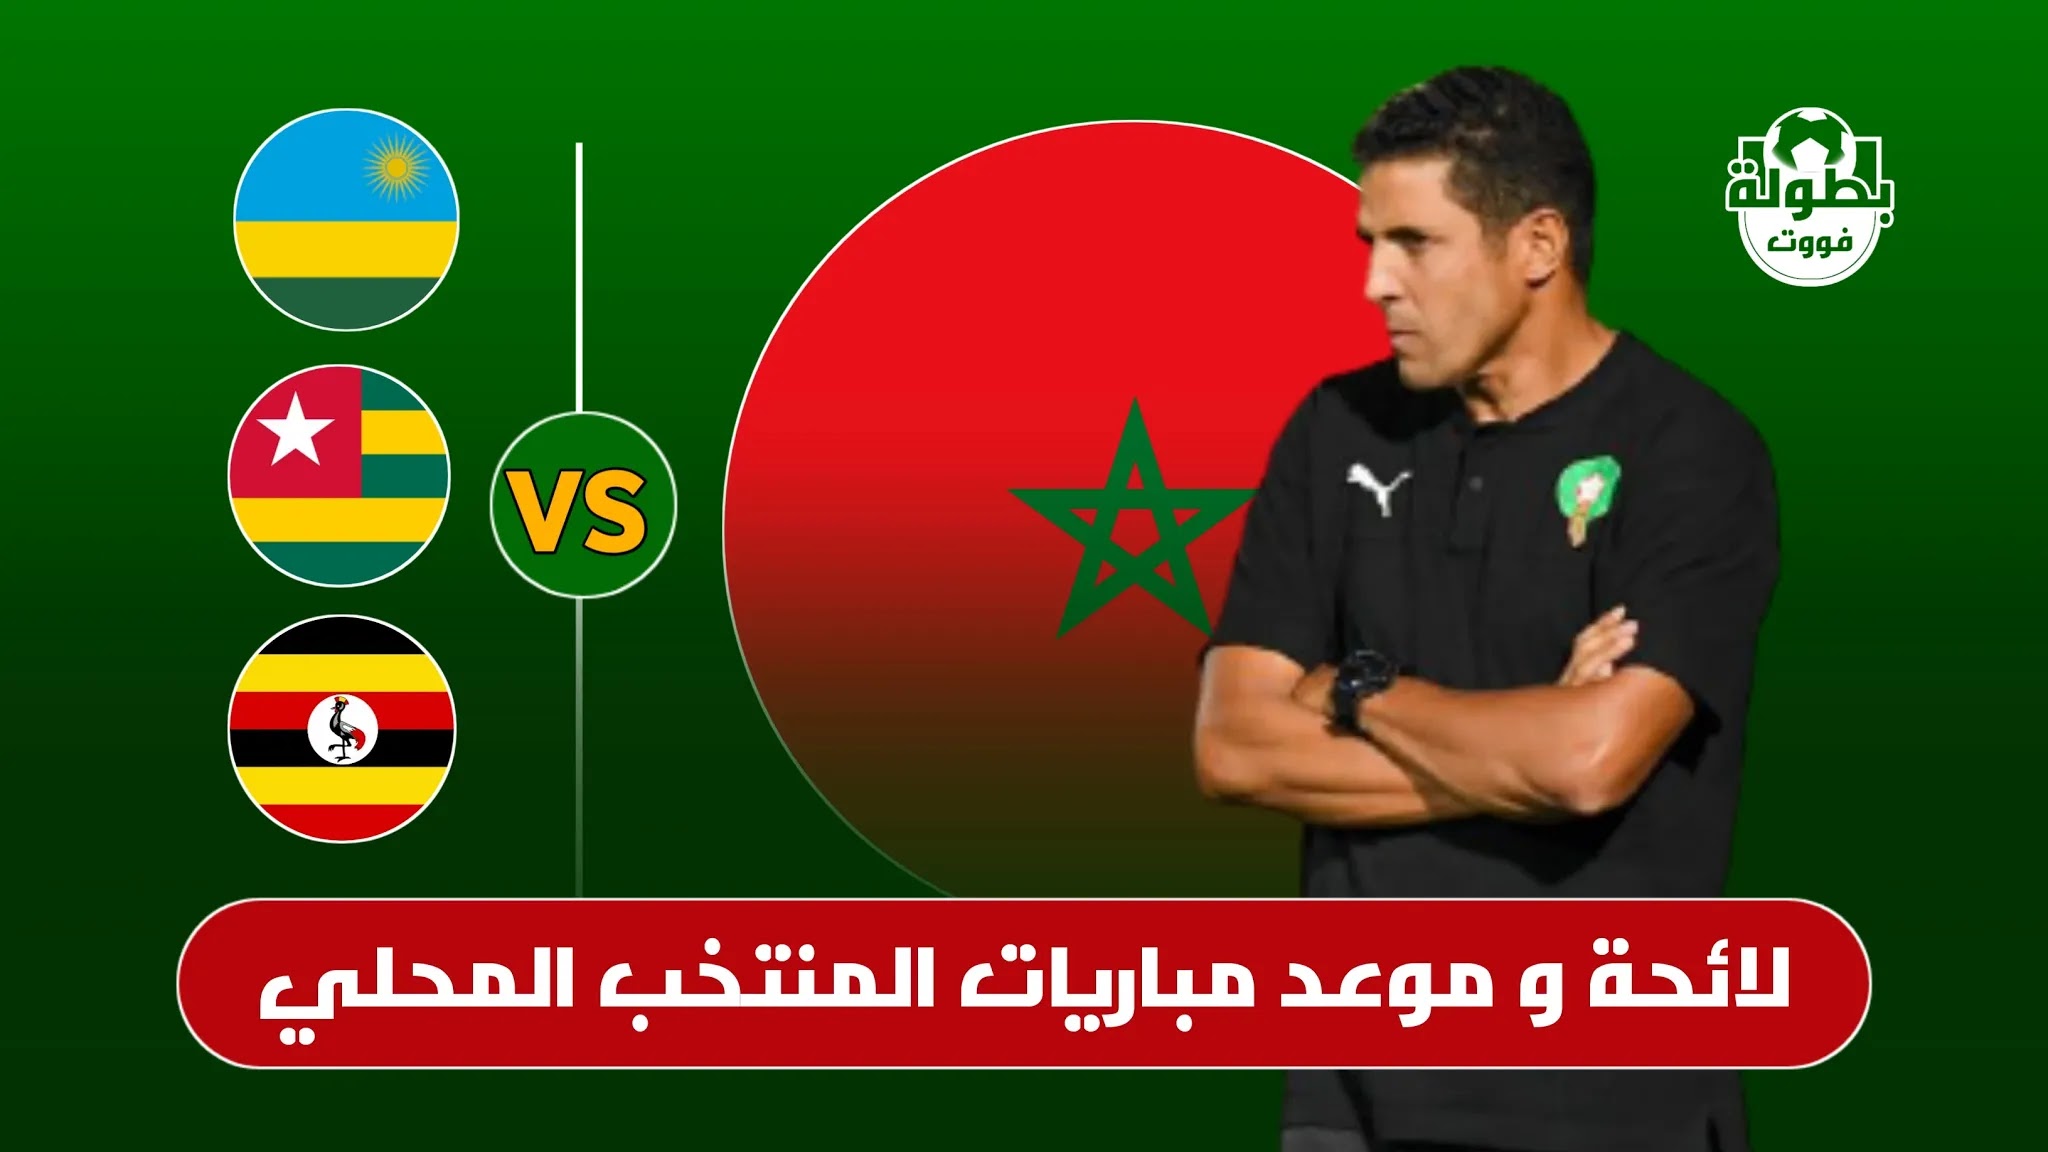 لائحة و موعد مباريات المنتخب المغربي المحلي في كأس إفريقيا للمحليين